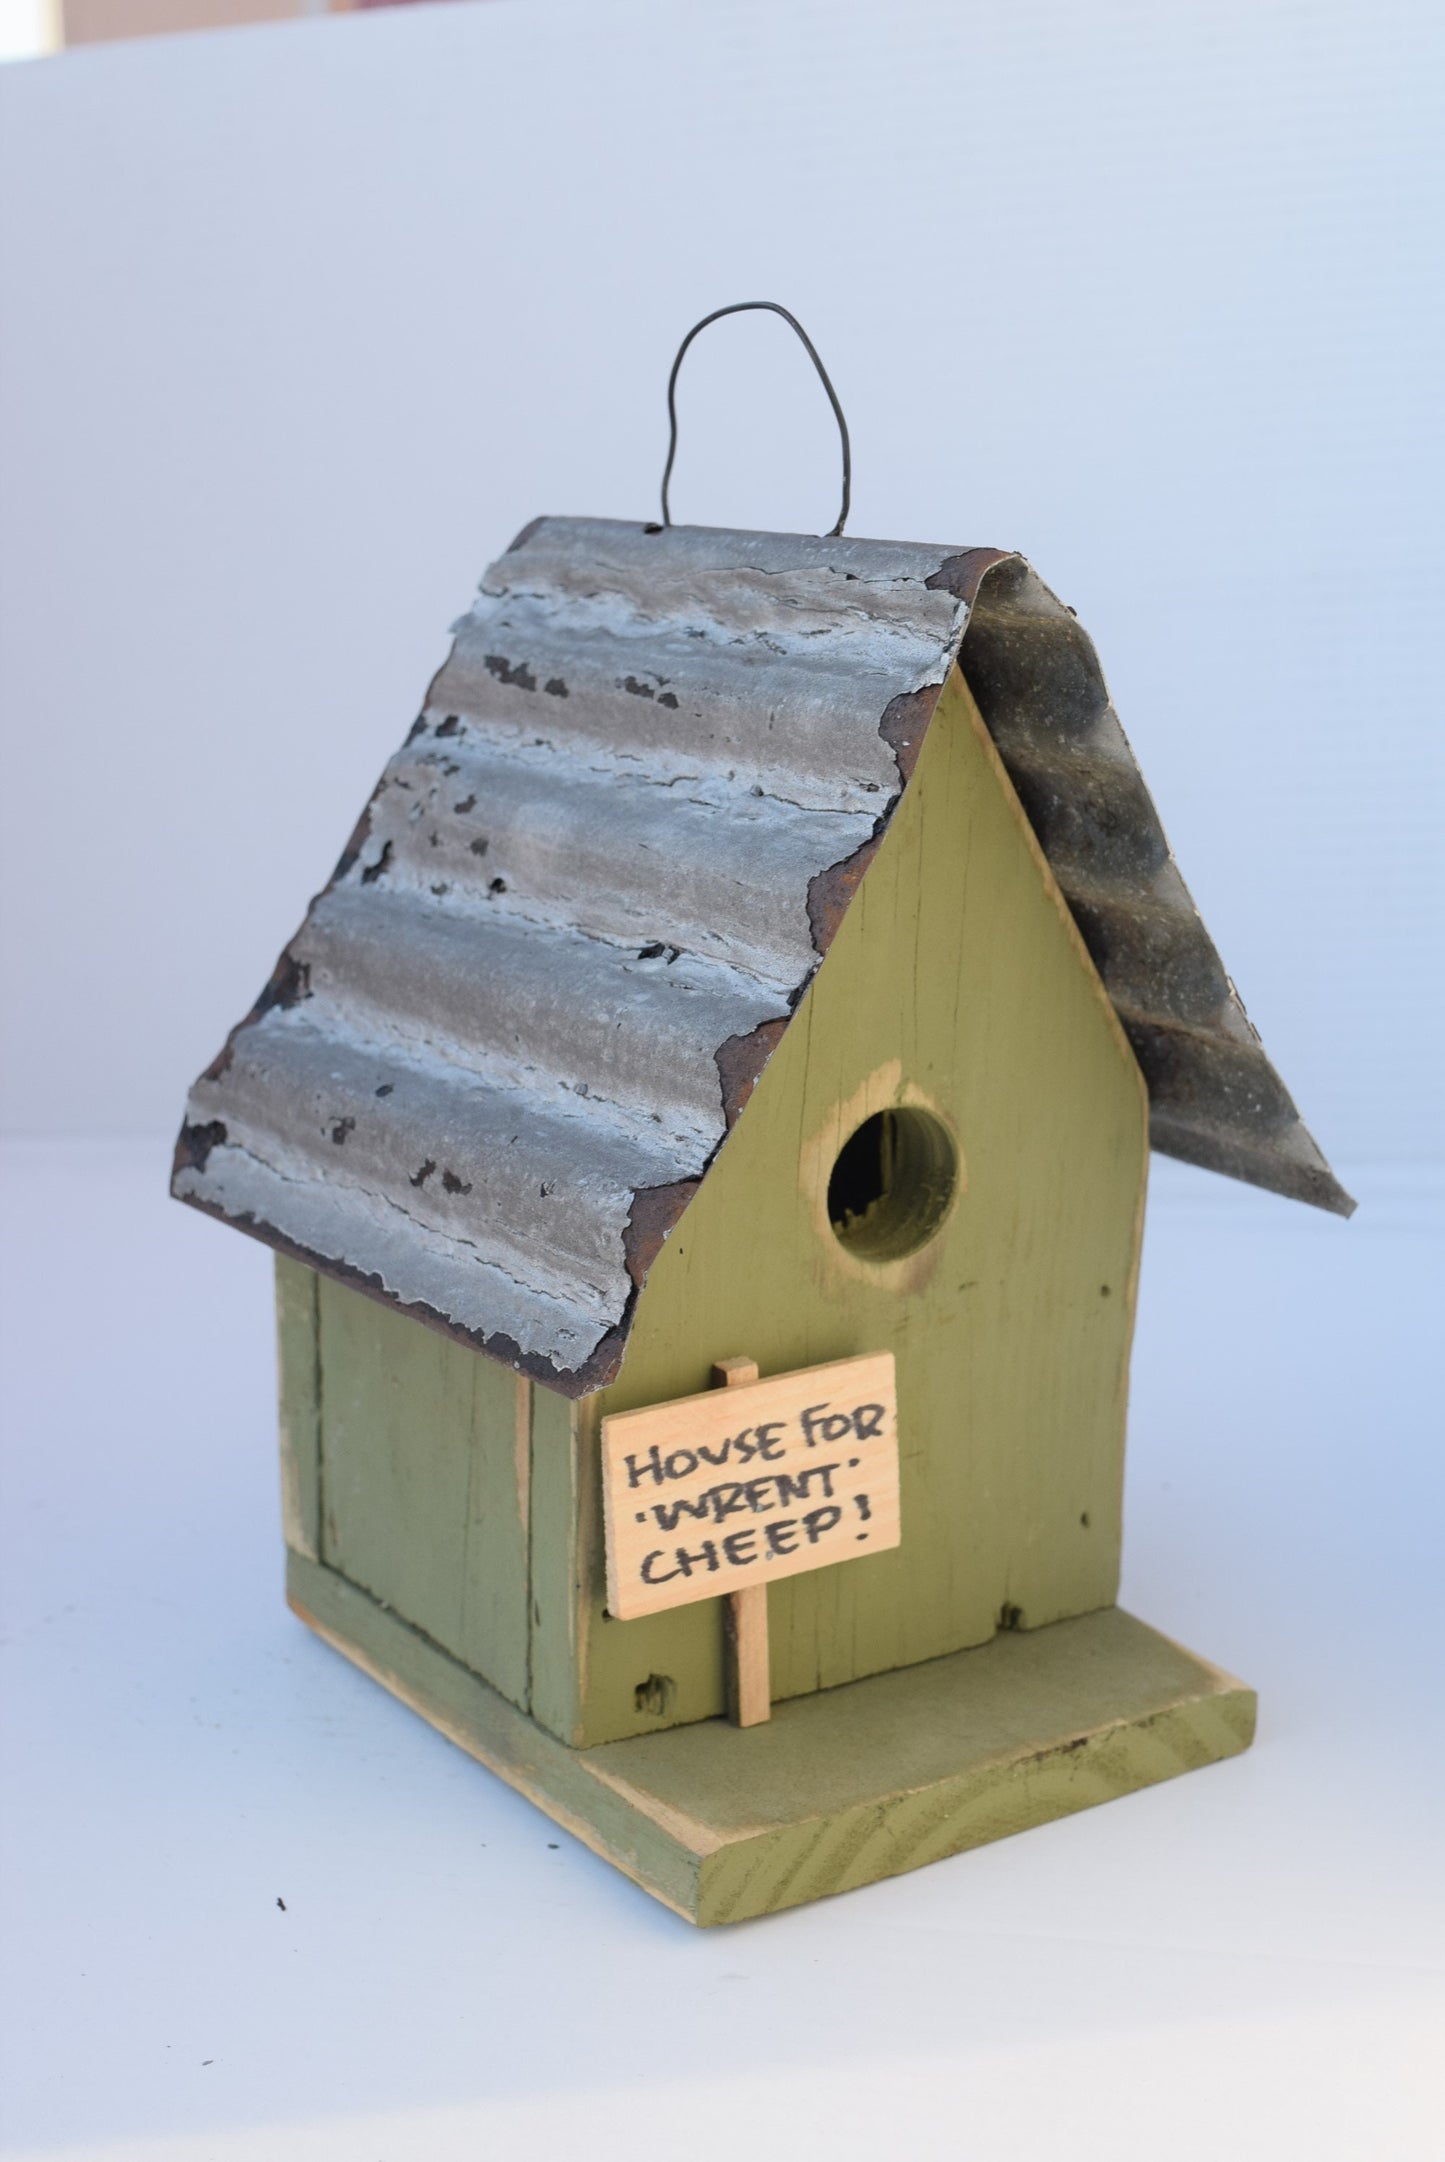 'House for Wrent' Wren Birdhouse